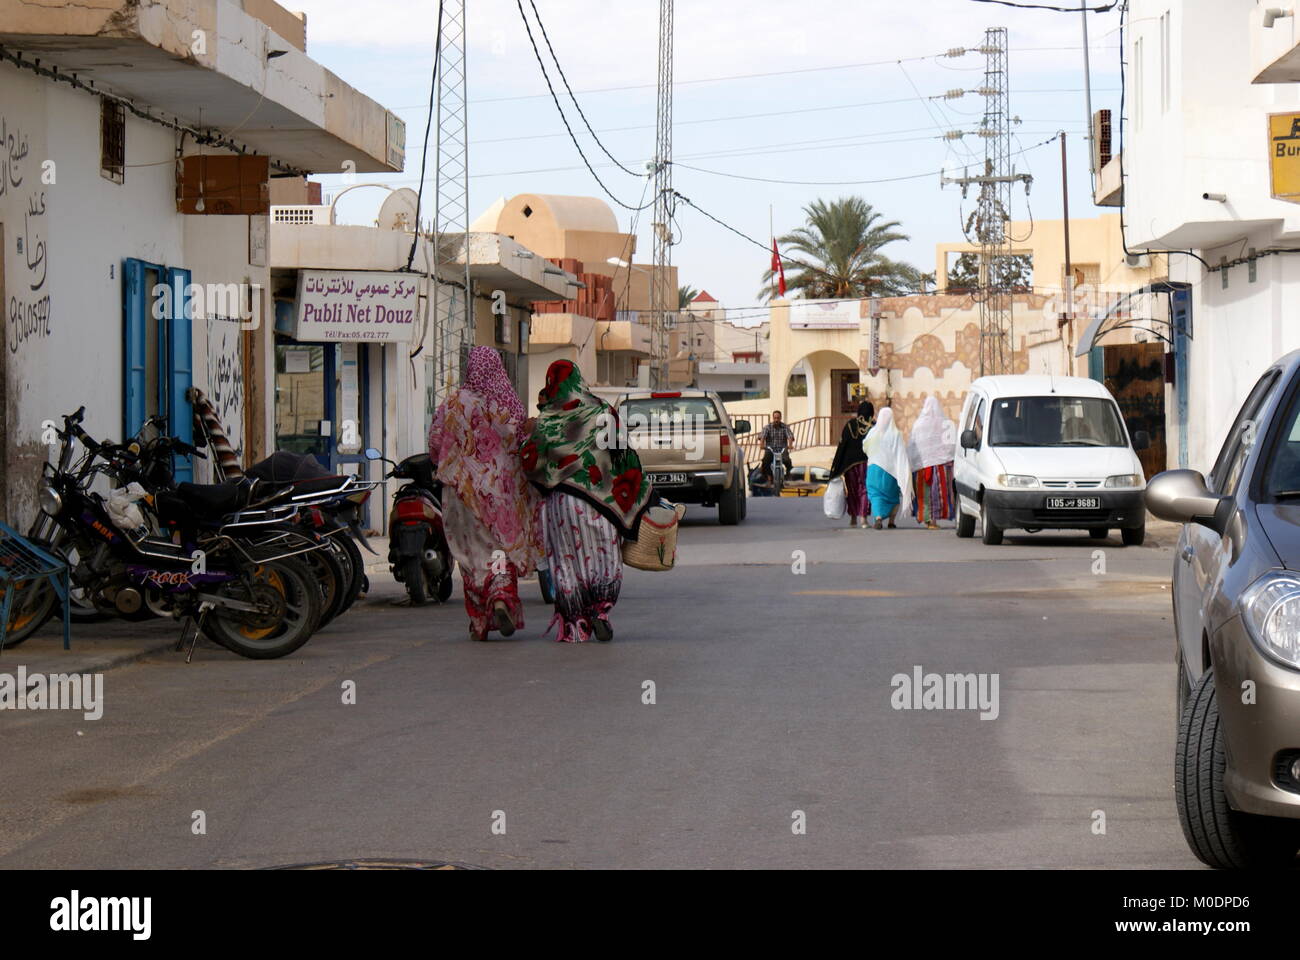 Street view Douz, Kebili district, Tunisia Stock Photo